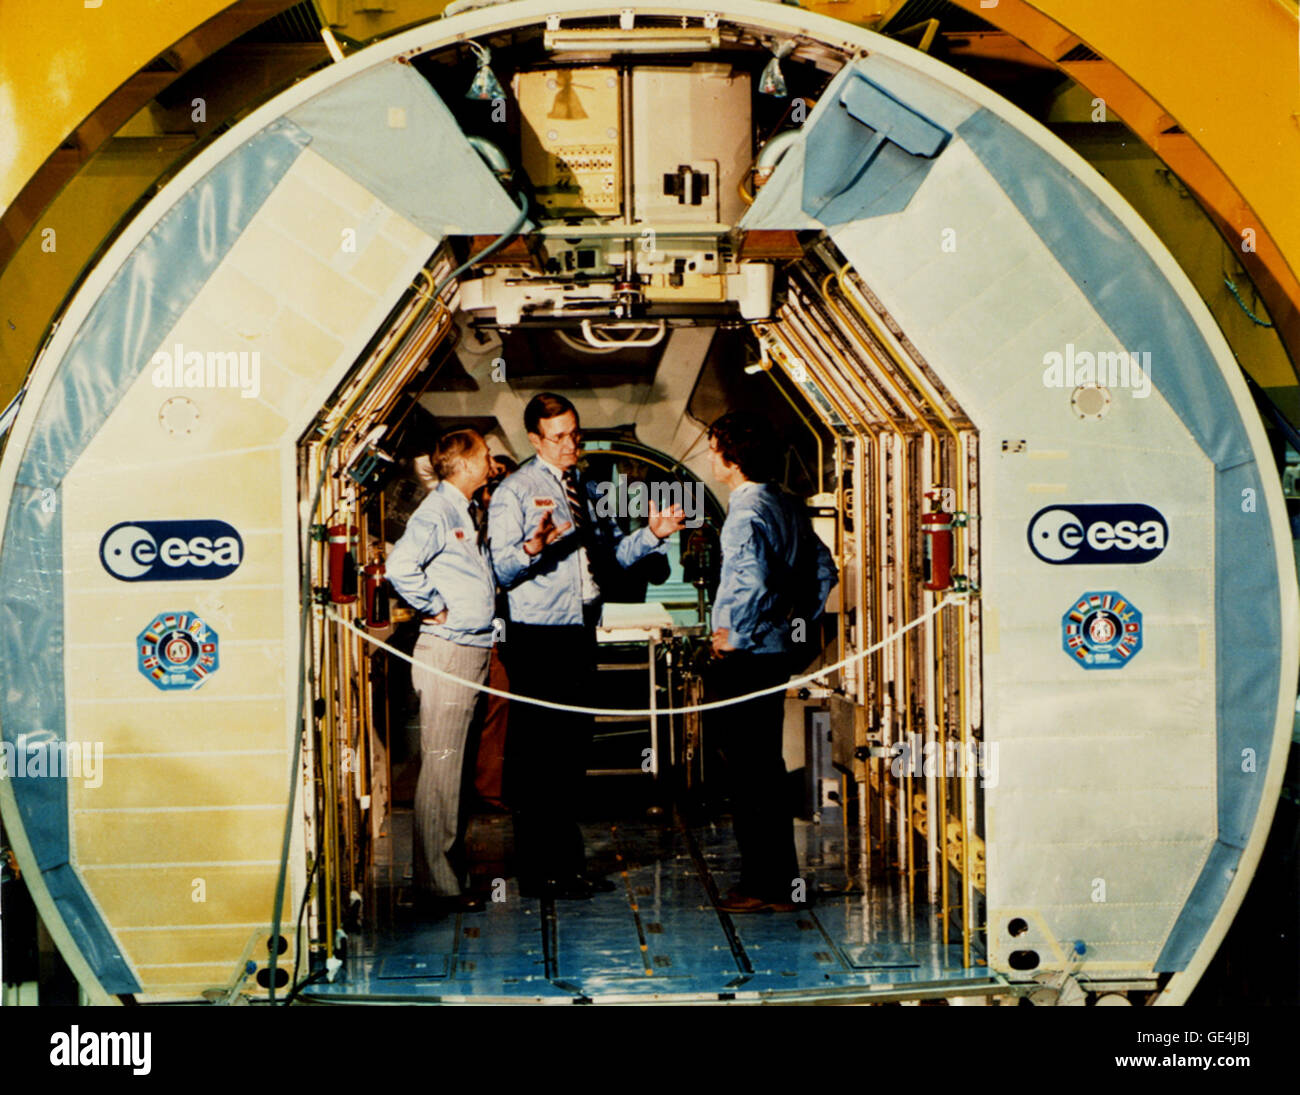 Nella foto a sinistra sono astronauta Owen K. Garriott, Vice Presidente George Bush e Ulf Merbold della Germania Ovest, all'interno di Spacelab in operazioni e acquista la costruzione presso il Kennedy Space Center. Questo costruiti in Europa laboratorio orbitale è stata formalmente inaugurata il 5 febbraio 1982. Merbold era uno degli specialisti di payload sul primo volo Spacelab STS-9, che ha lanciato il 28 novembre 1983. Spacelab era un laboratorio riutilizzabile che ha permesso agli scienziati di eseguire vari esperimenti in microgravità mentre in orbita intorno alla terra. Progettato dall'Agenzia spaziale europea (ESA) e montato in NASA Space Shuttle Foto Stock